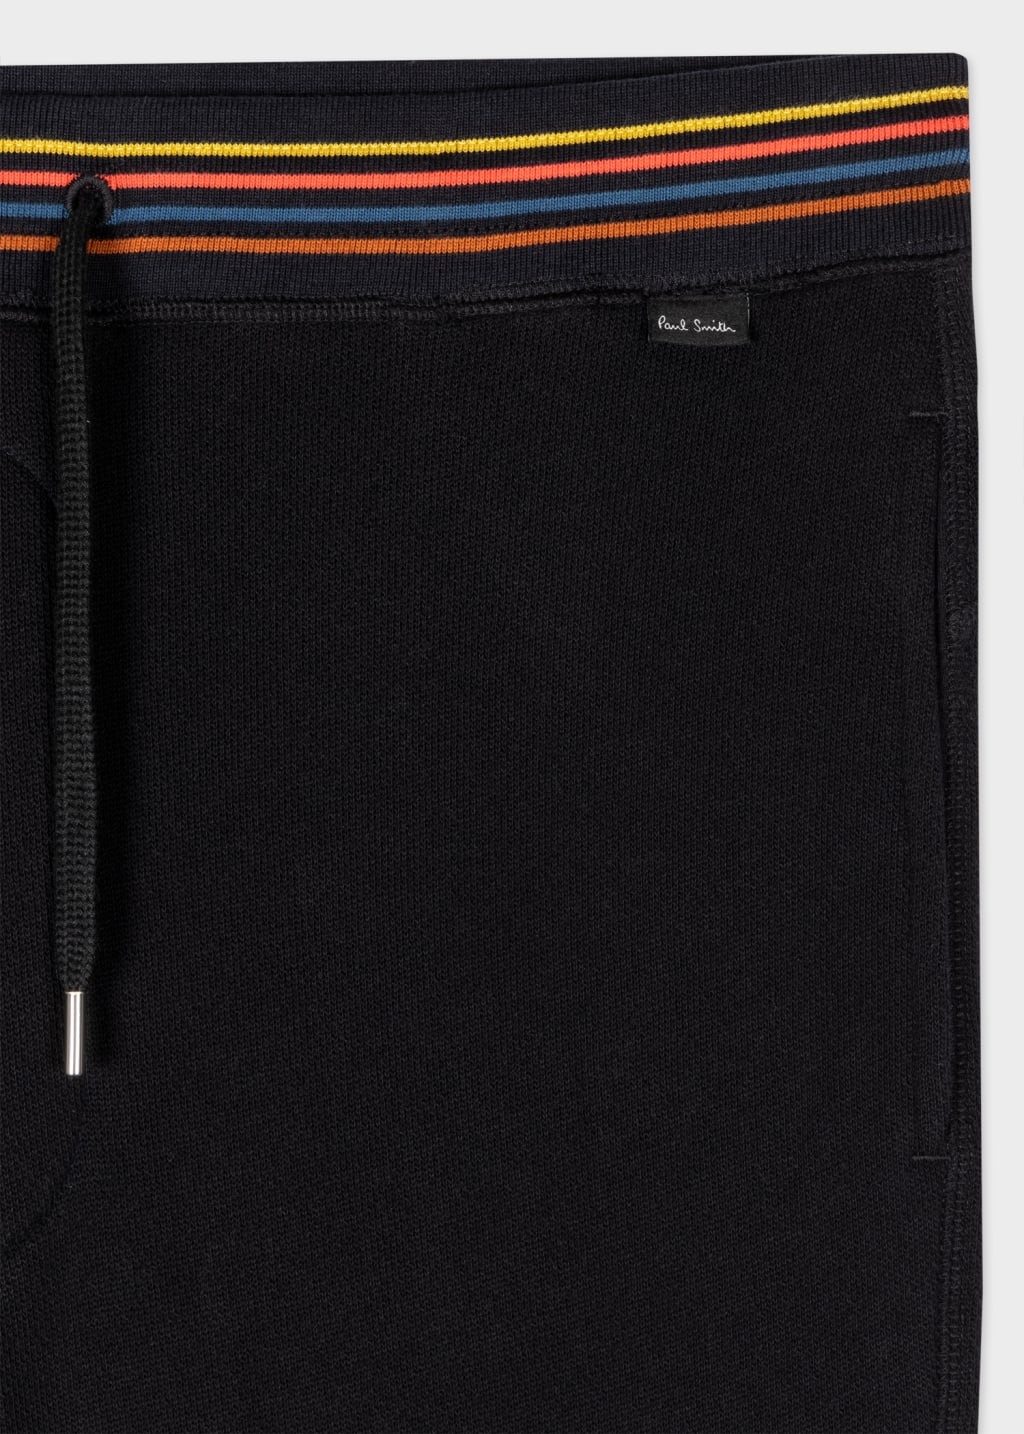 Detail View - Black Cotton 'Artist Stripe' Lounge Pants Paul Smith